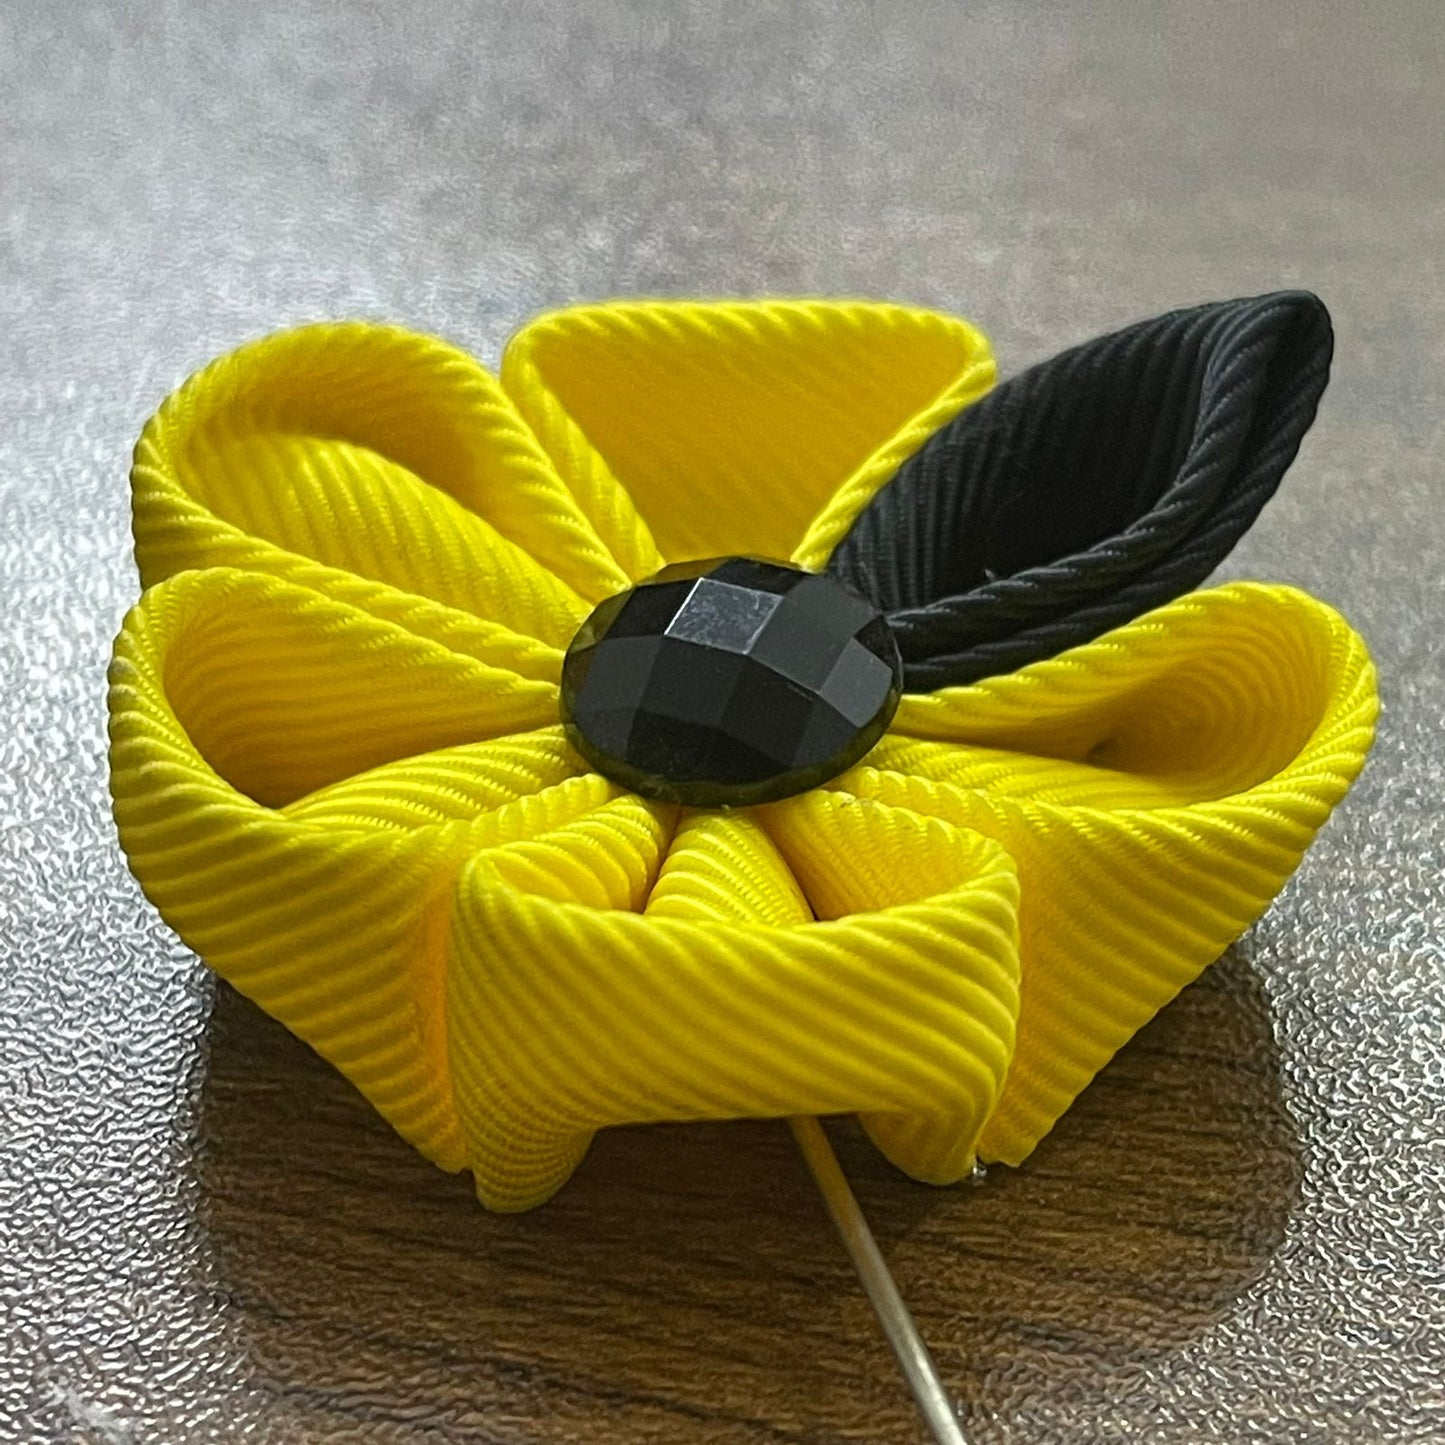 yellow flower lapel pin brooch online in pakistan